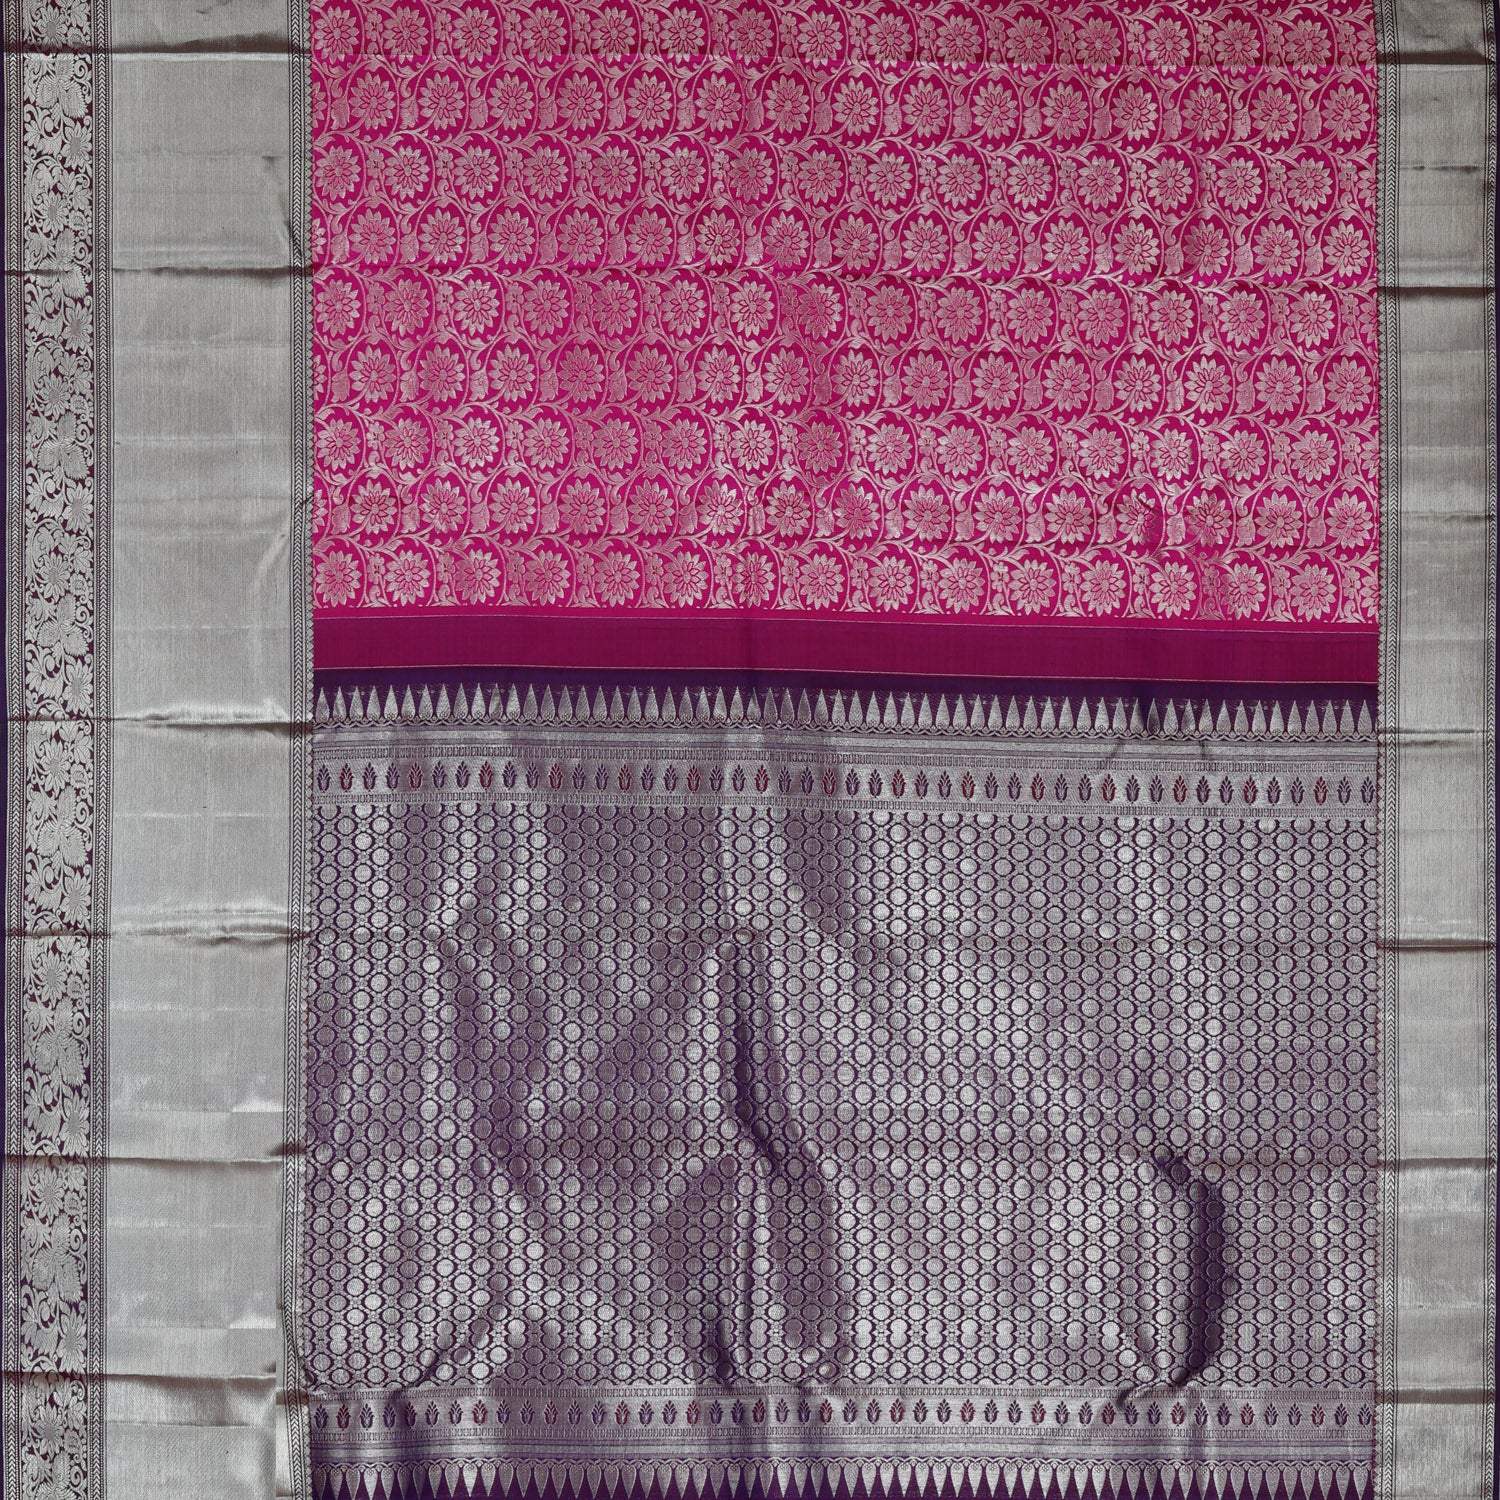 Bright Pink Kanjivaram Silk Saree With Floral Motif Pattern - Singhania's